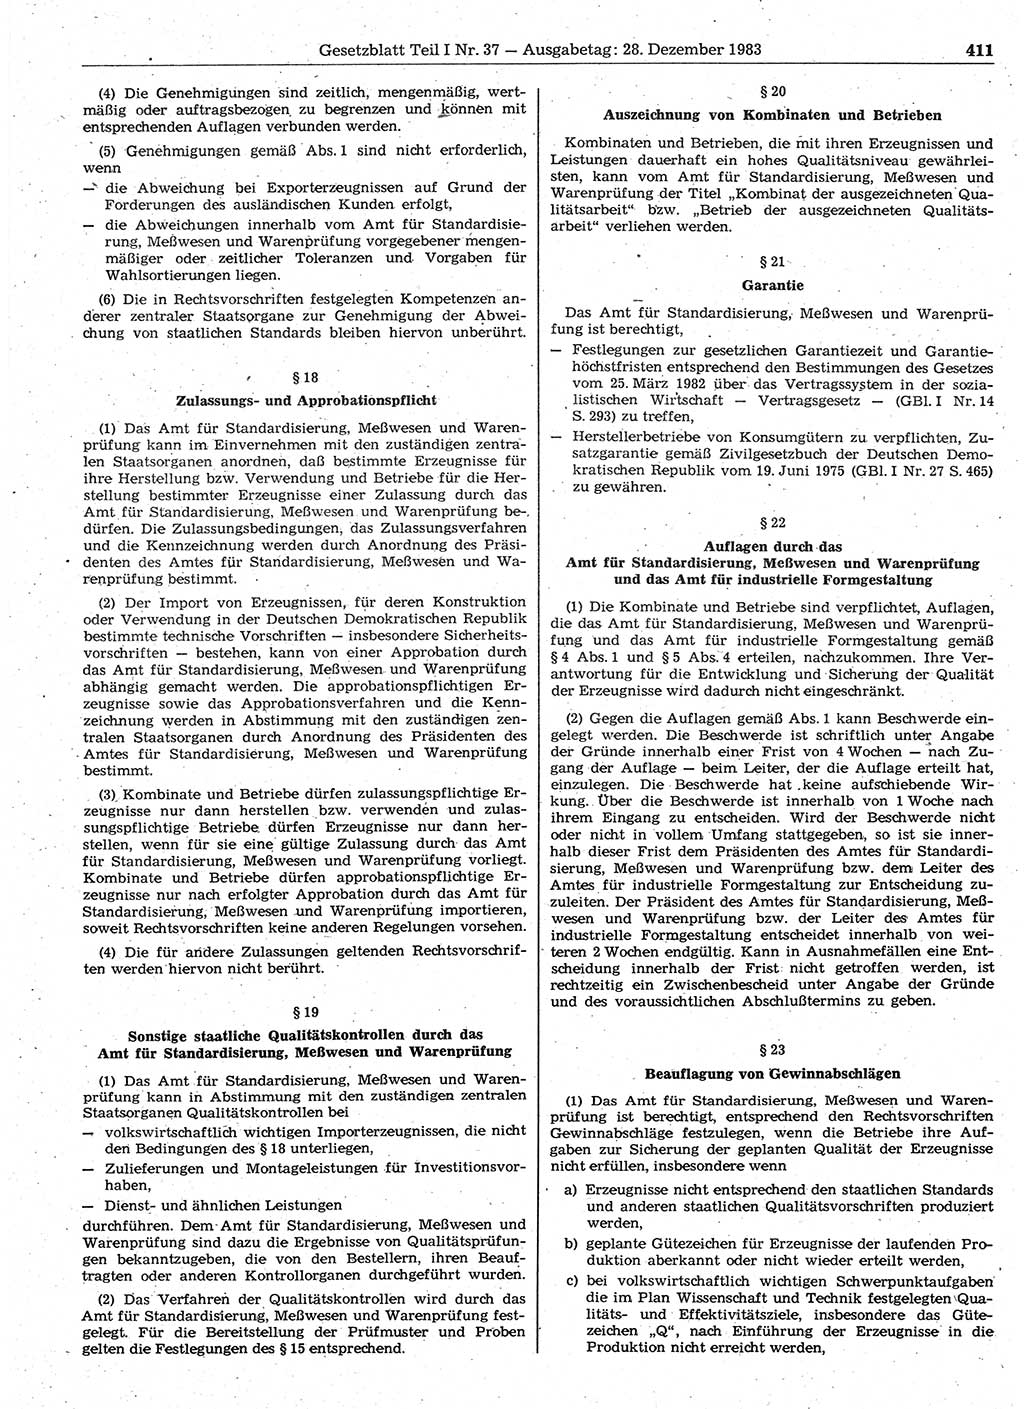 Gesetzblatt (GBl.) der Deutschen Demokratischen Republik (DDR) Teil Ⅰ 1983, Seite 411 (GBl. DDR Ⅰ 1983, S. 411)